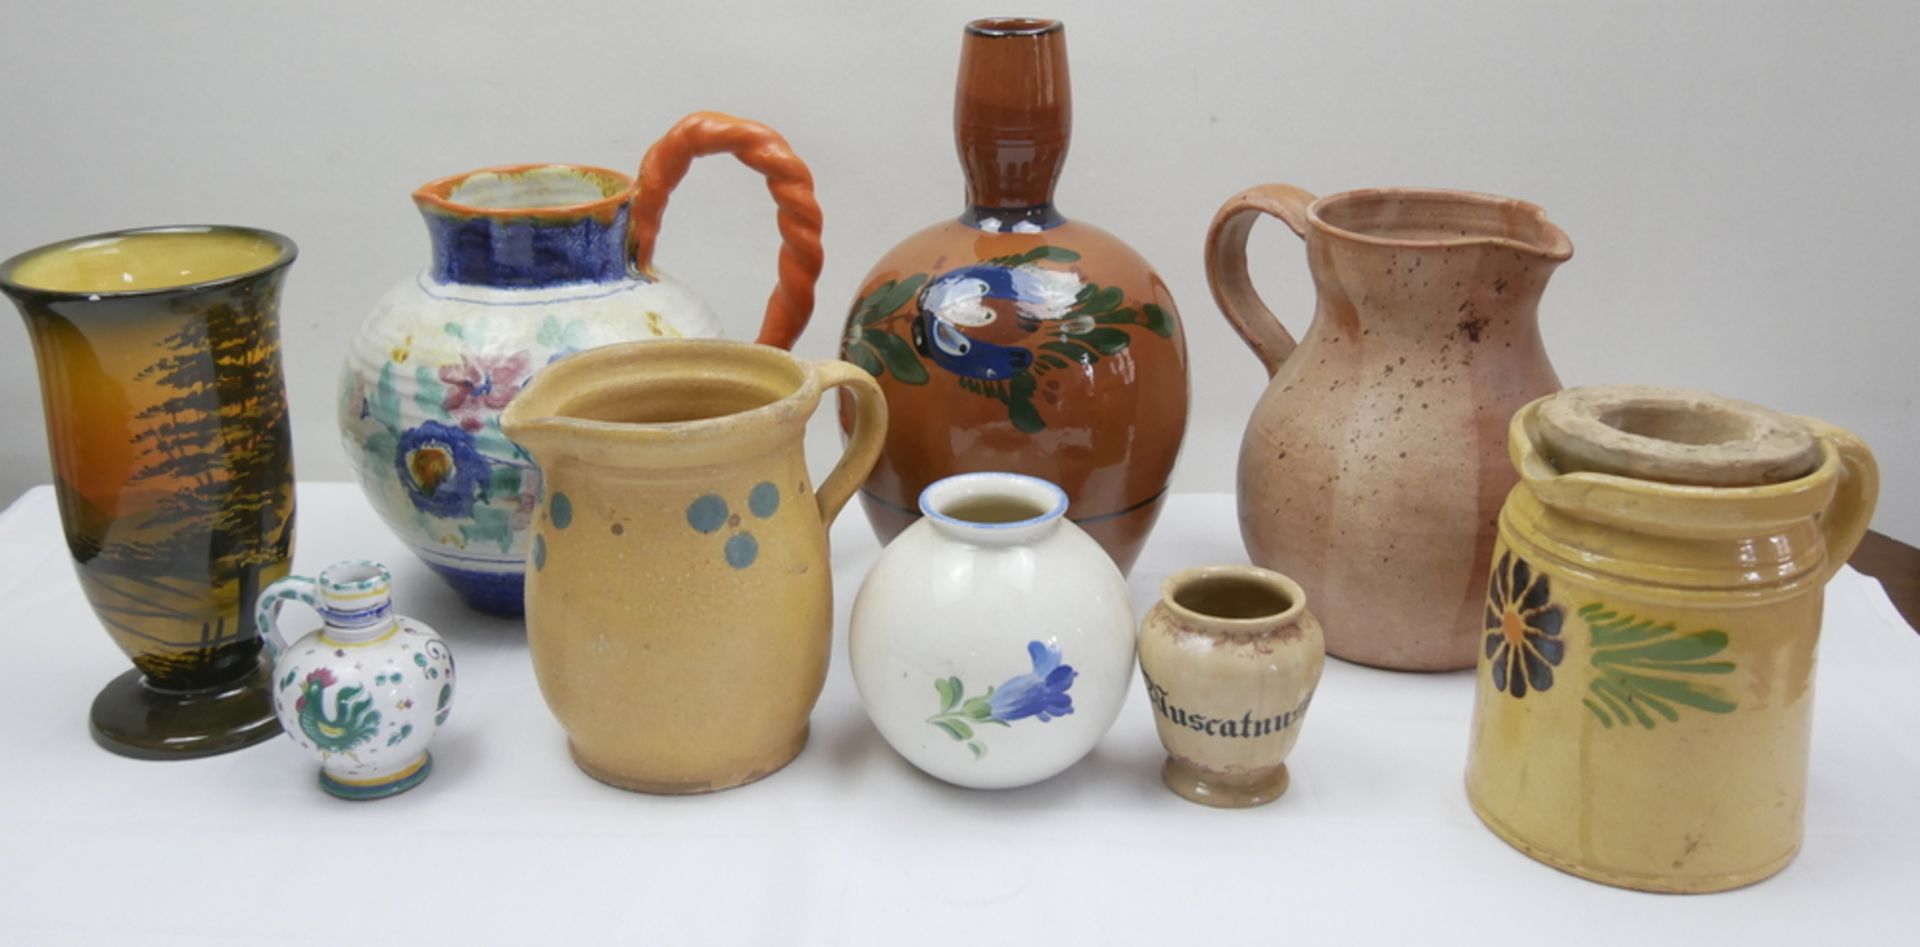 Lot verschiedene Keramik, insgesamt 9 Teile, dabei Krüge und Vasen auch Majolika. Bitte besichtigen